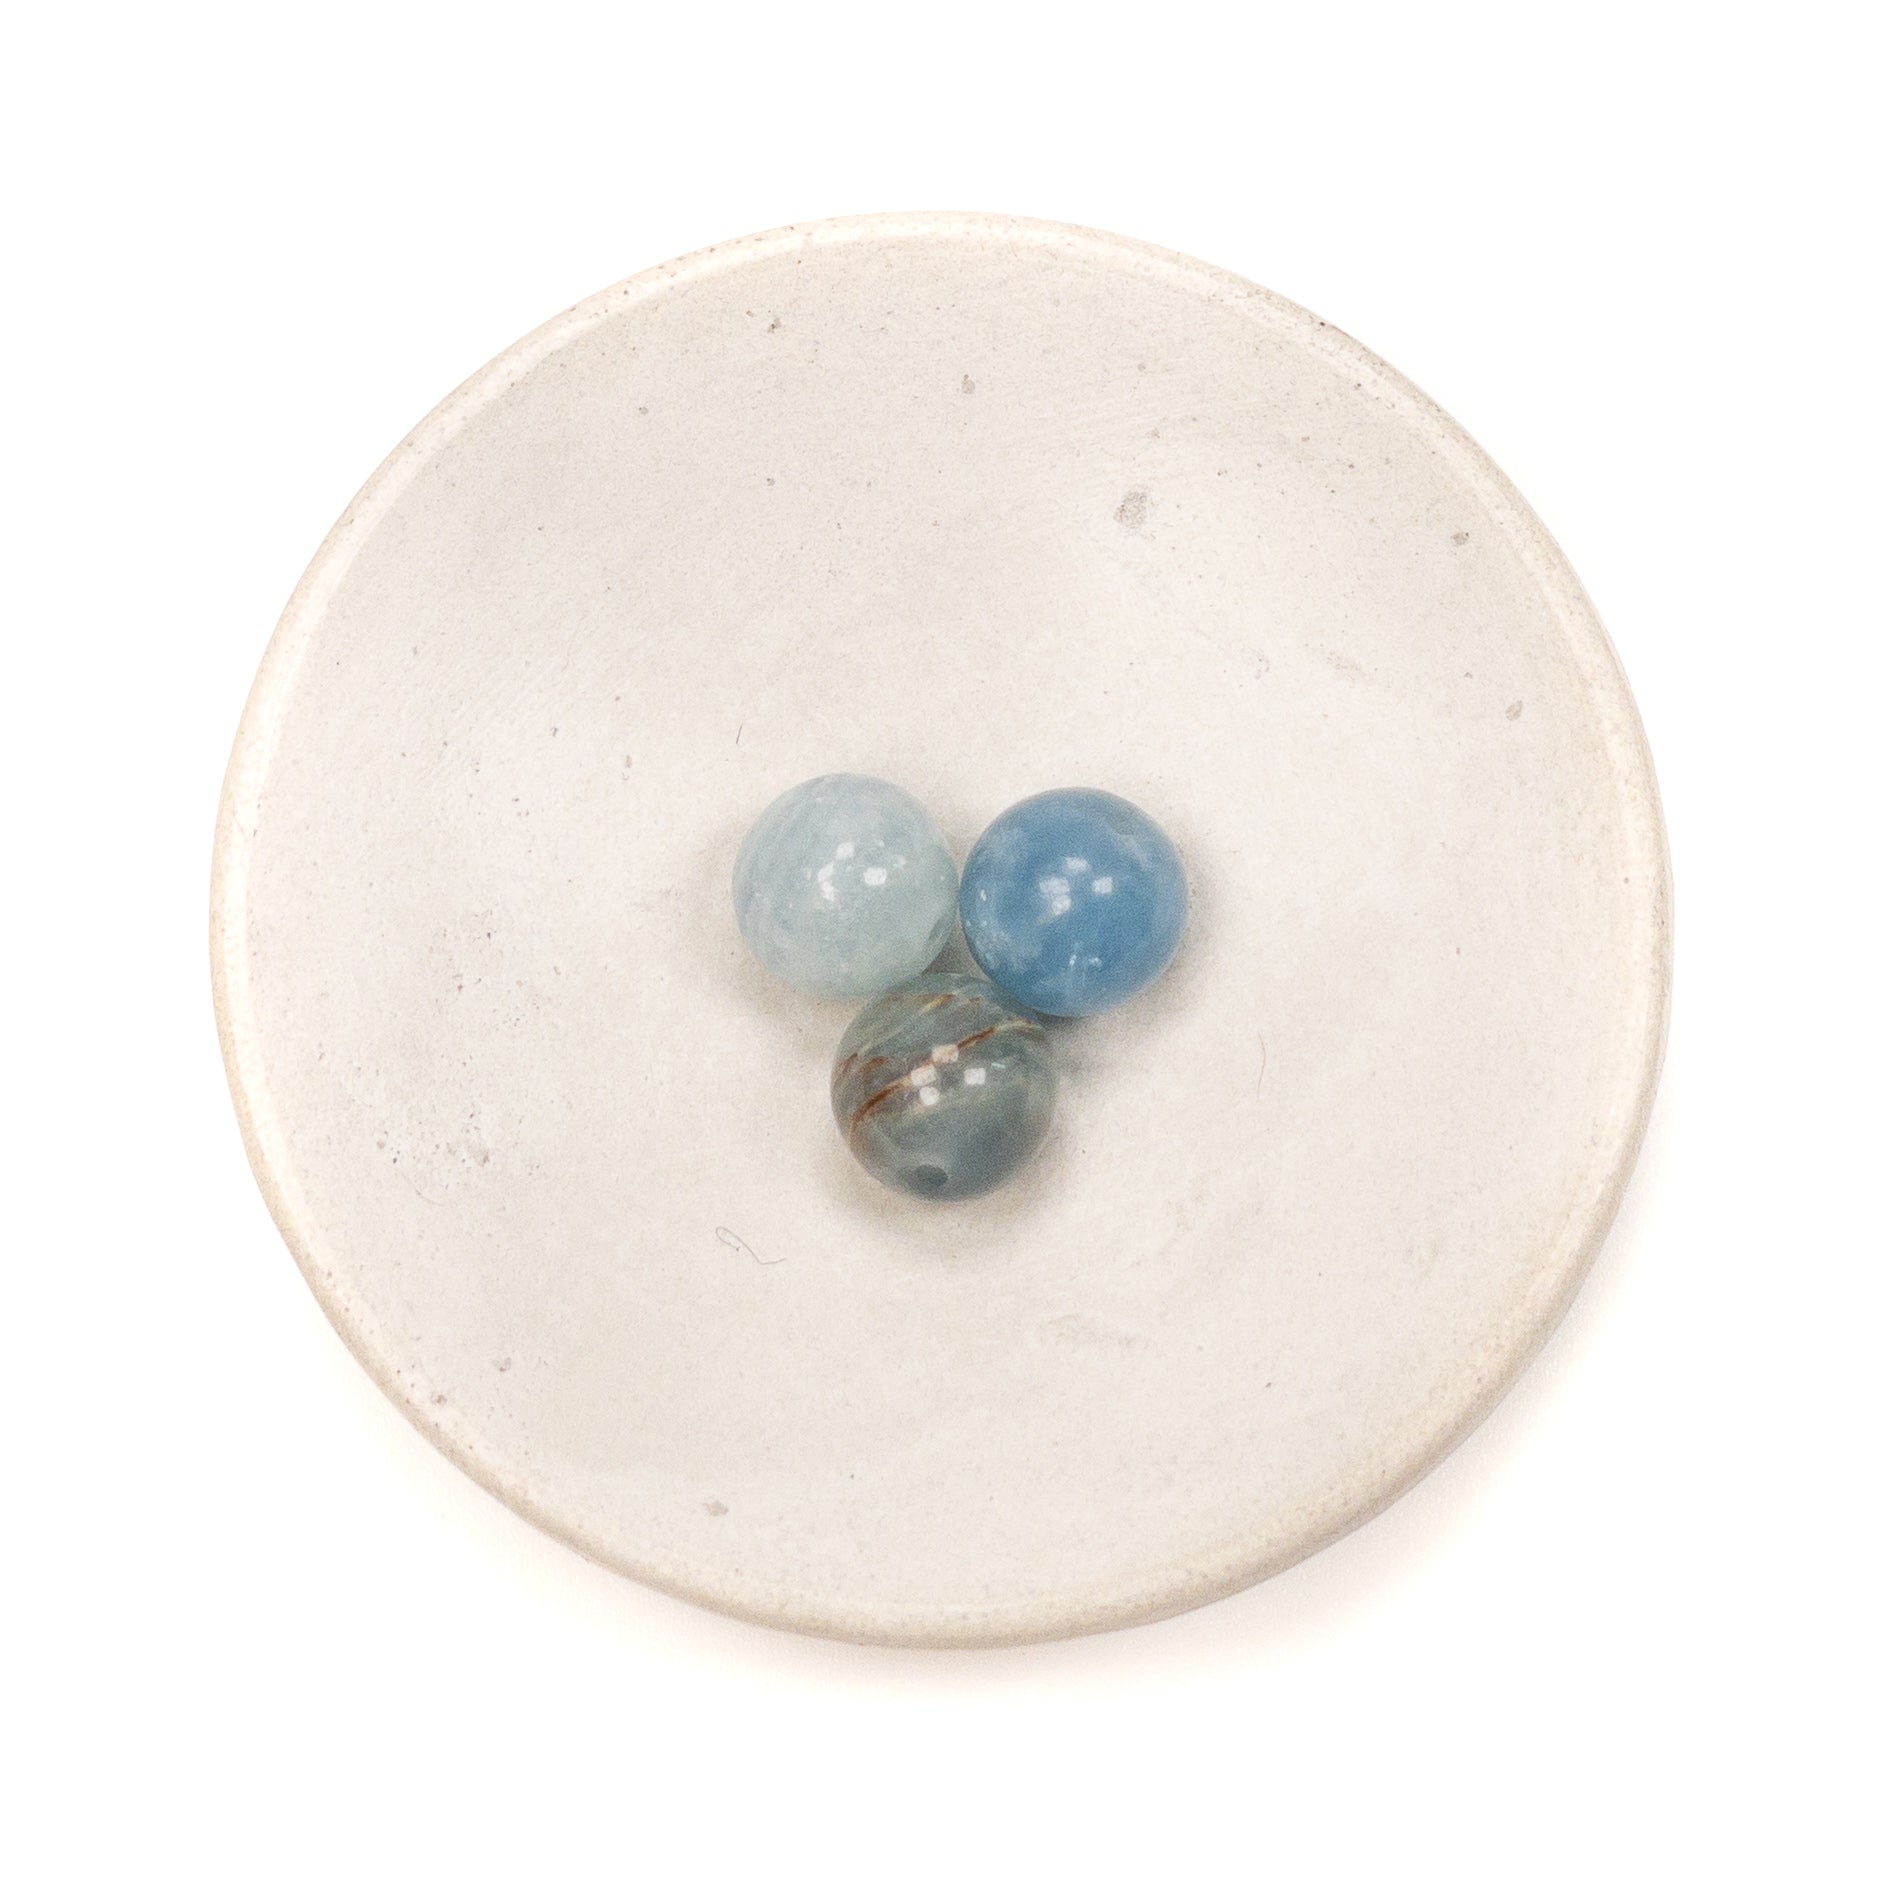 Aquatine Blue Calcite 10mm Round Bead - 3 pcs.